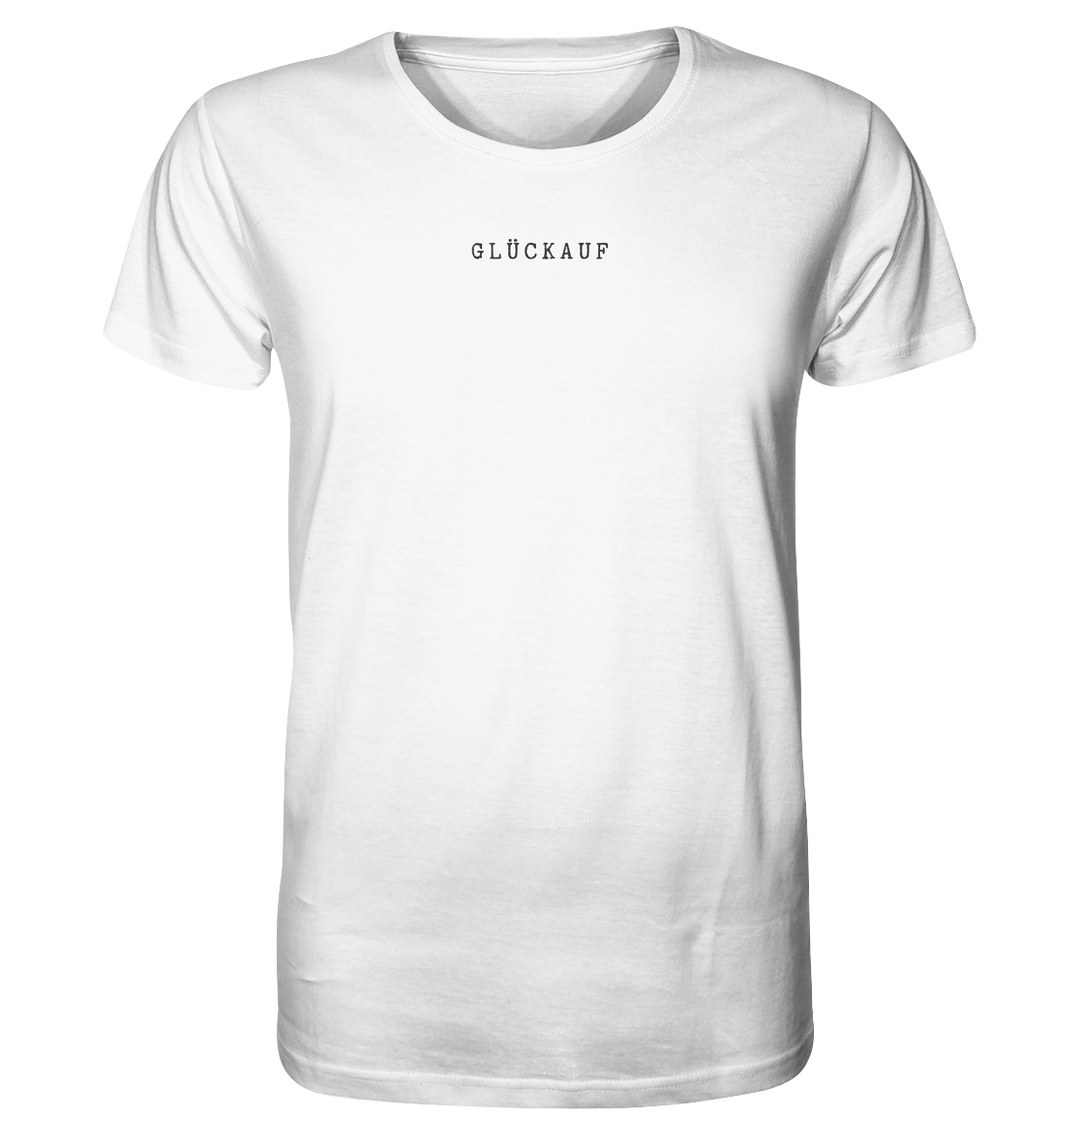 GLÜCKAUF gestickt simple weiß - Organic Shirt (Stick)